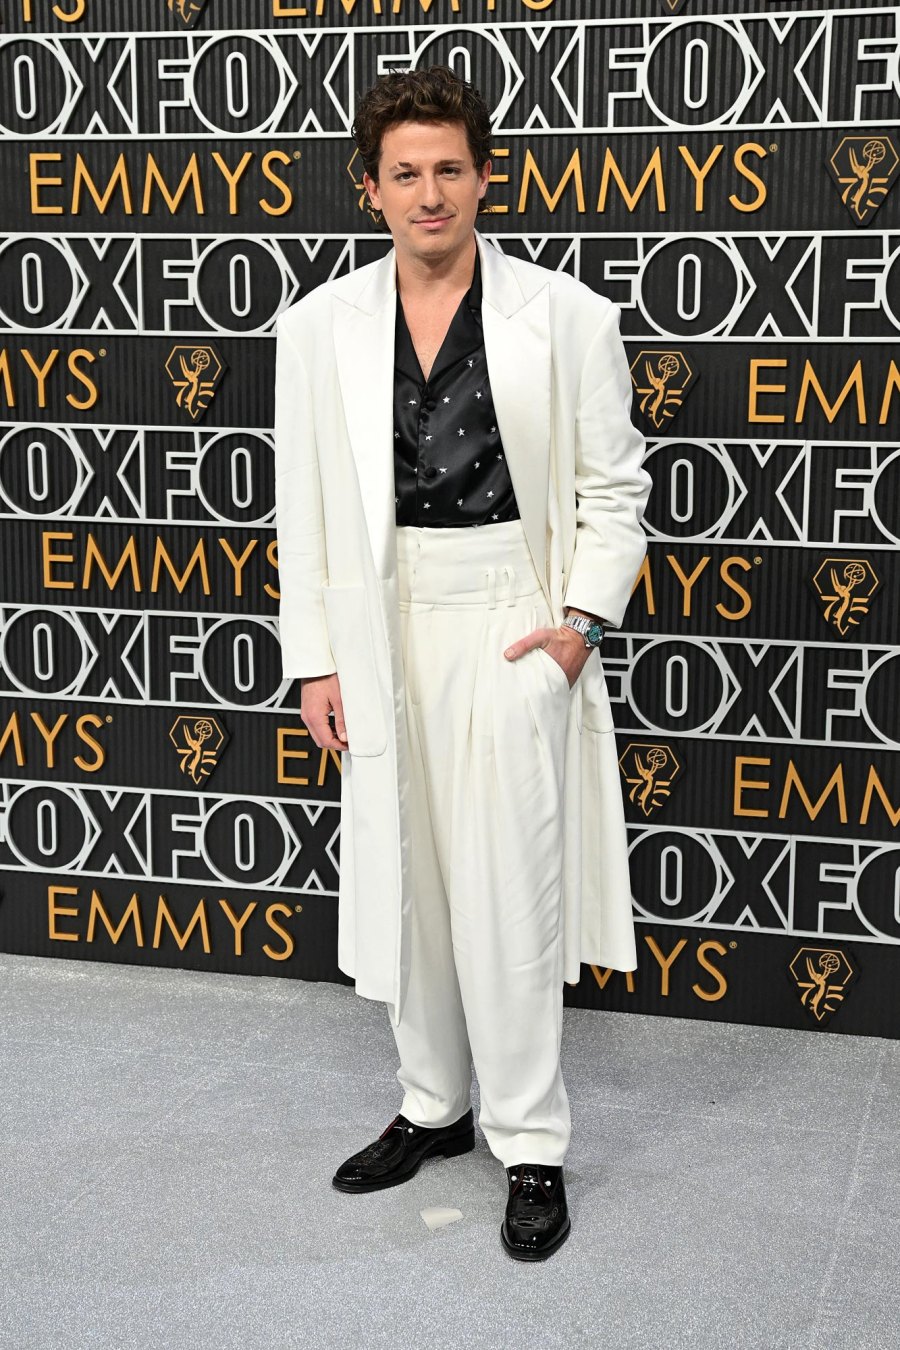 Emmy Awards 2023 Red Carpet Arrivals 695 Charlie Puth